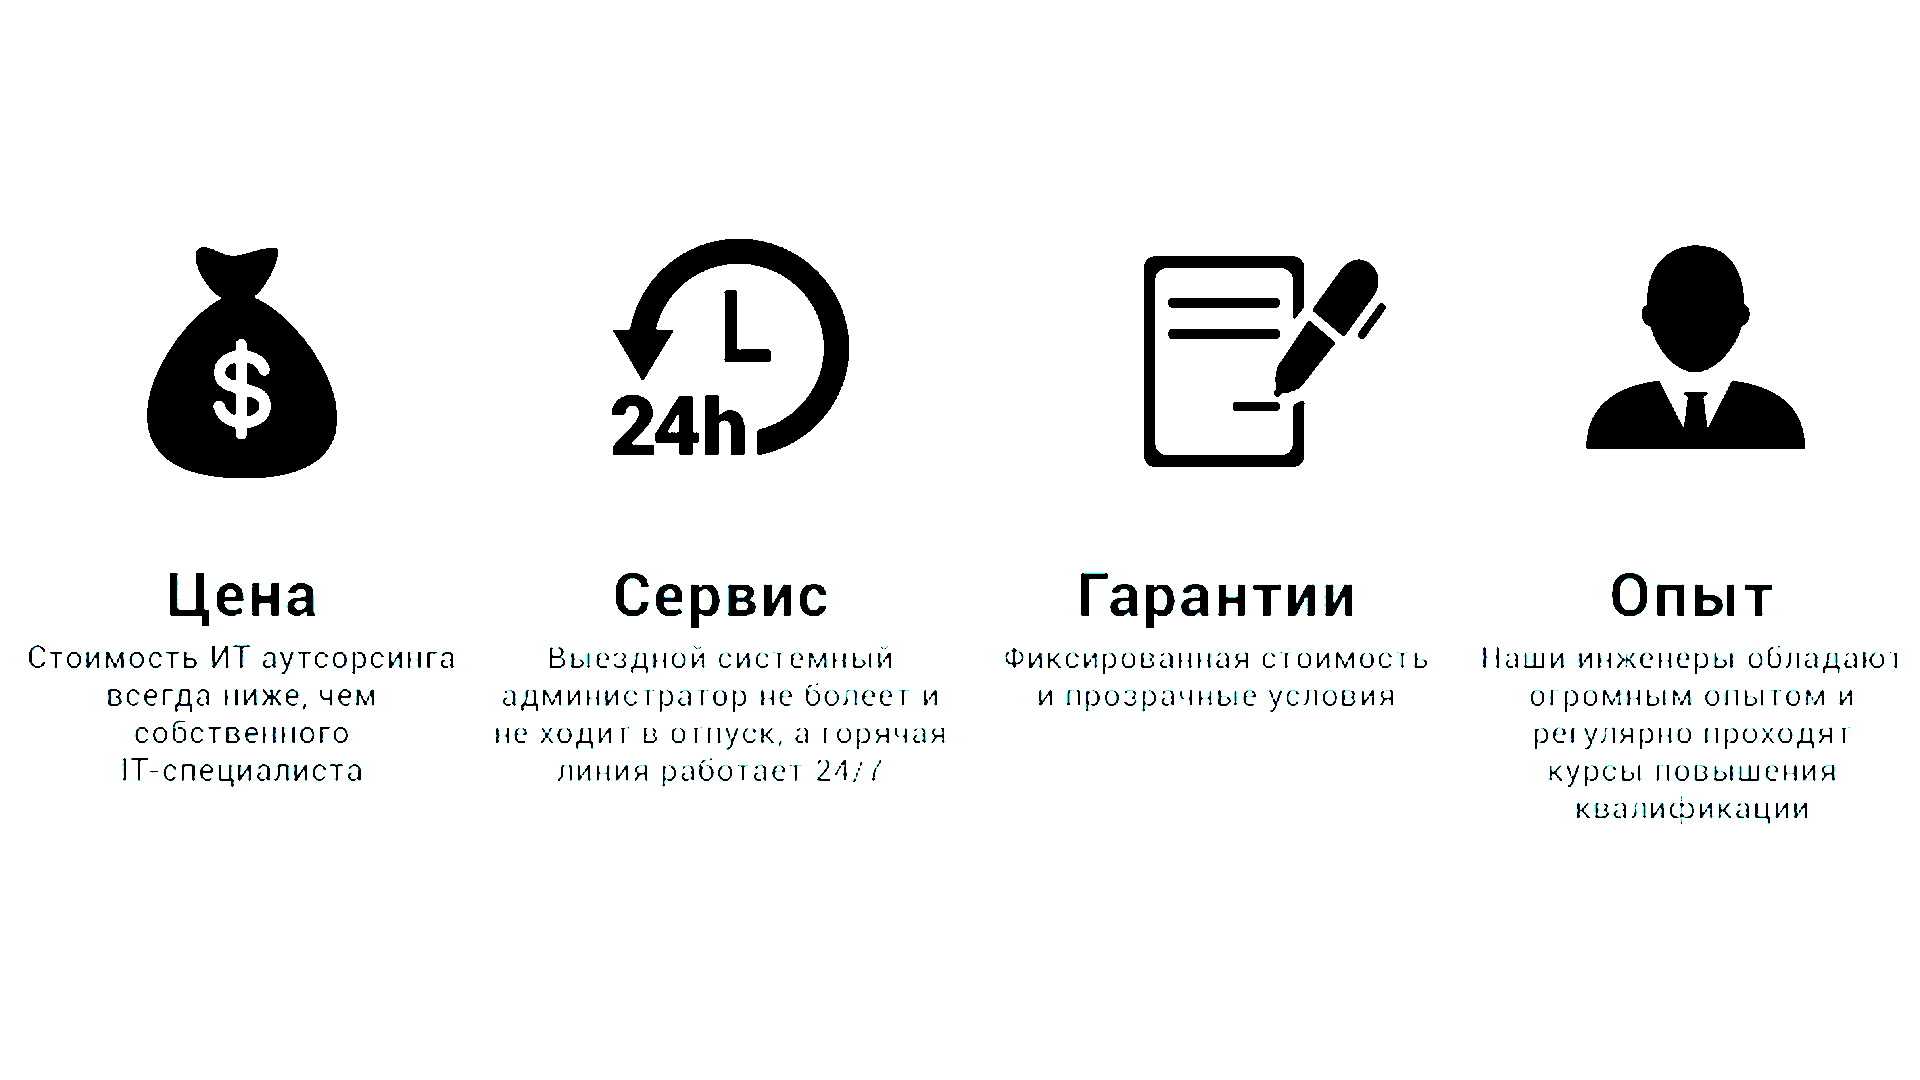 Группа компаний сидиси (cdc) - российский разработчик и интегратор программных решений, направленных на развитие цифровой экономики россии